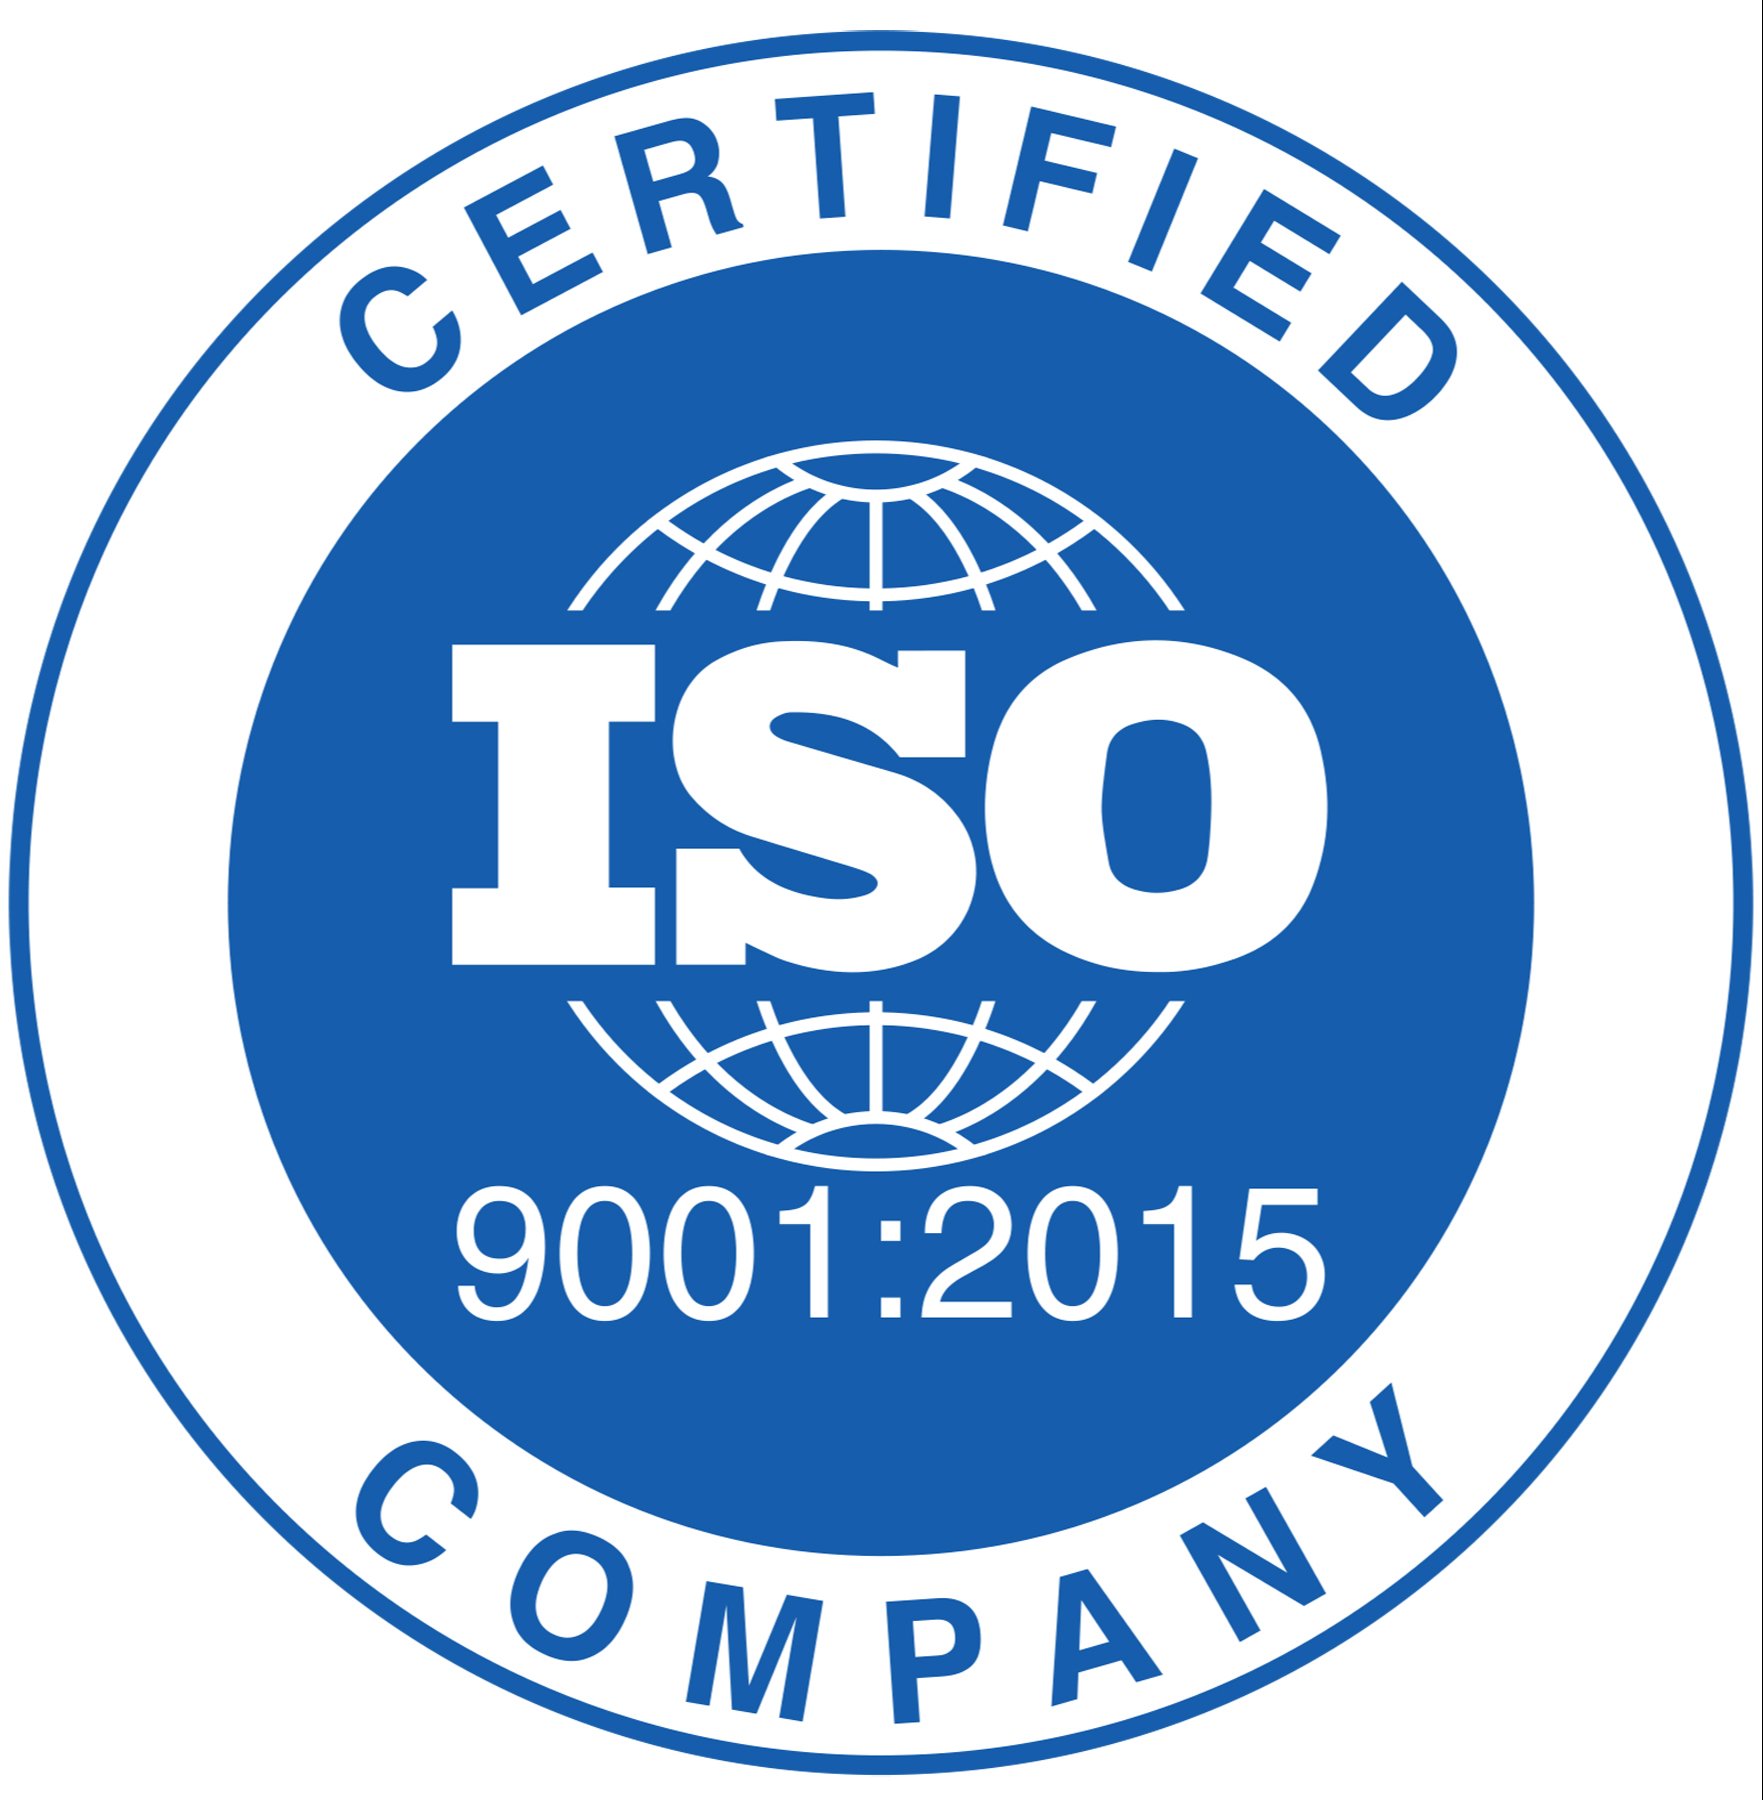 Францын Афнор группээс Чанарын менежментийн тогтолцоо ISO 9001:2015 стандартыг нэвтрүүлснийг баталгаажуулах гэрчилгээгээ гардан авлаа.